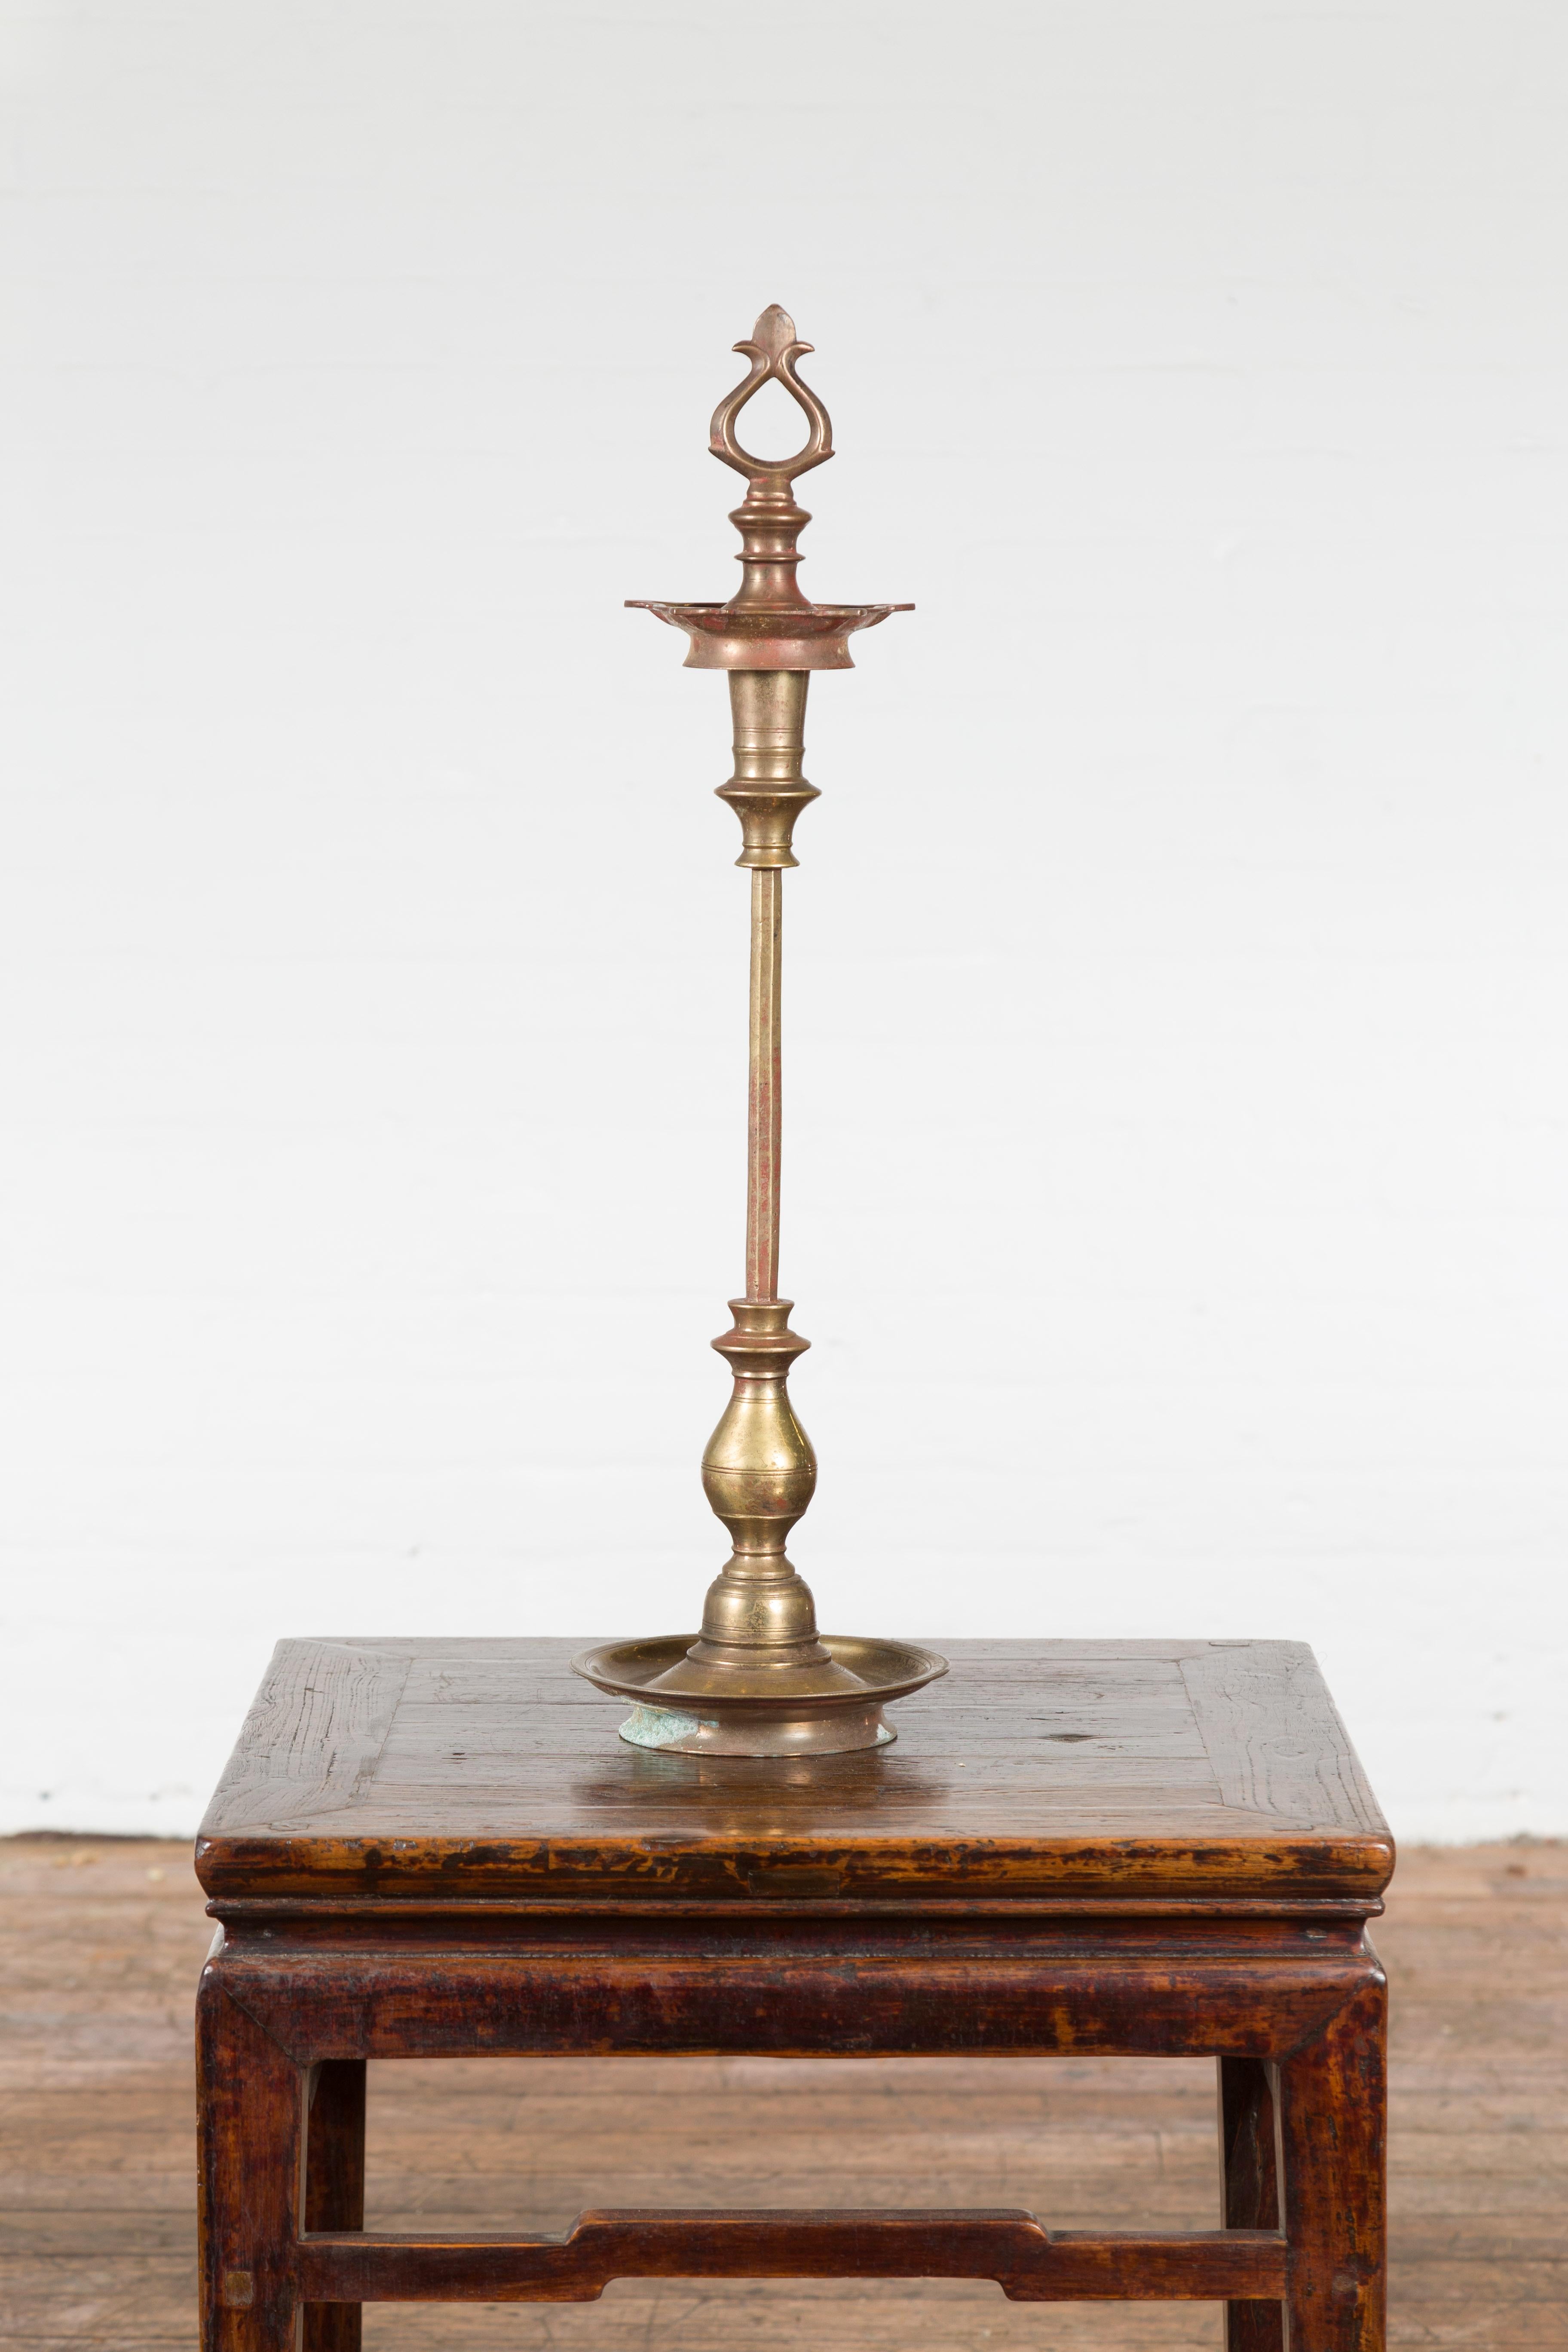 Ein eleganter Vintage-Pricket aus Messing aus Indien, der als Kerzenhalter dient. Die Pricket steht auf einem leicht erhöhten runden Sockel, dessen Ränder leicht angehoben sind, während die Oberseite, auf der die Kerze steht, wunderschön mit